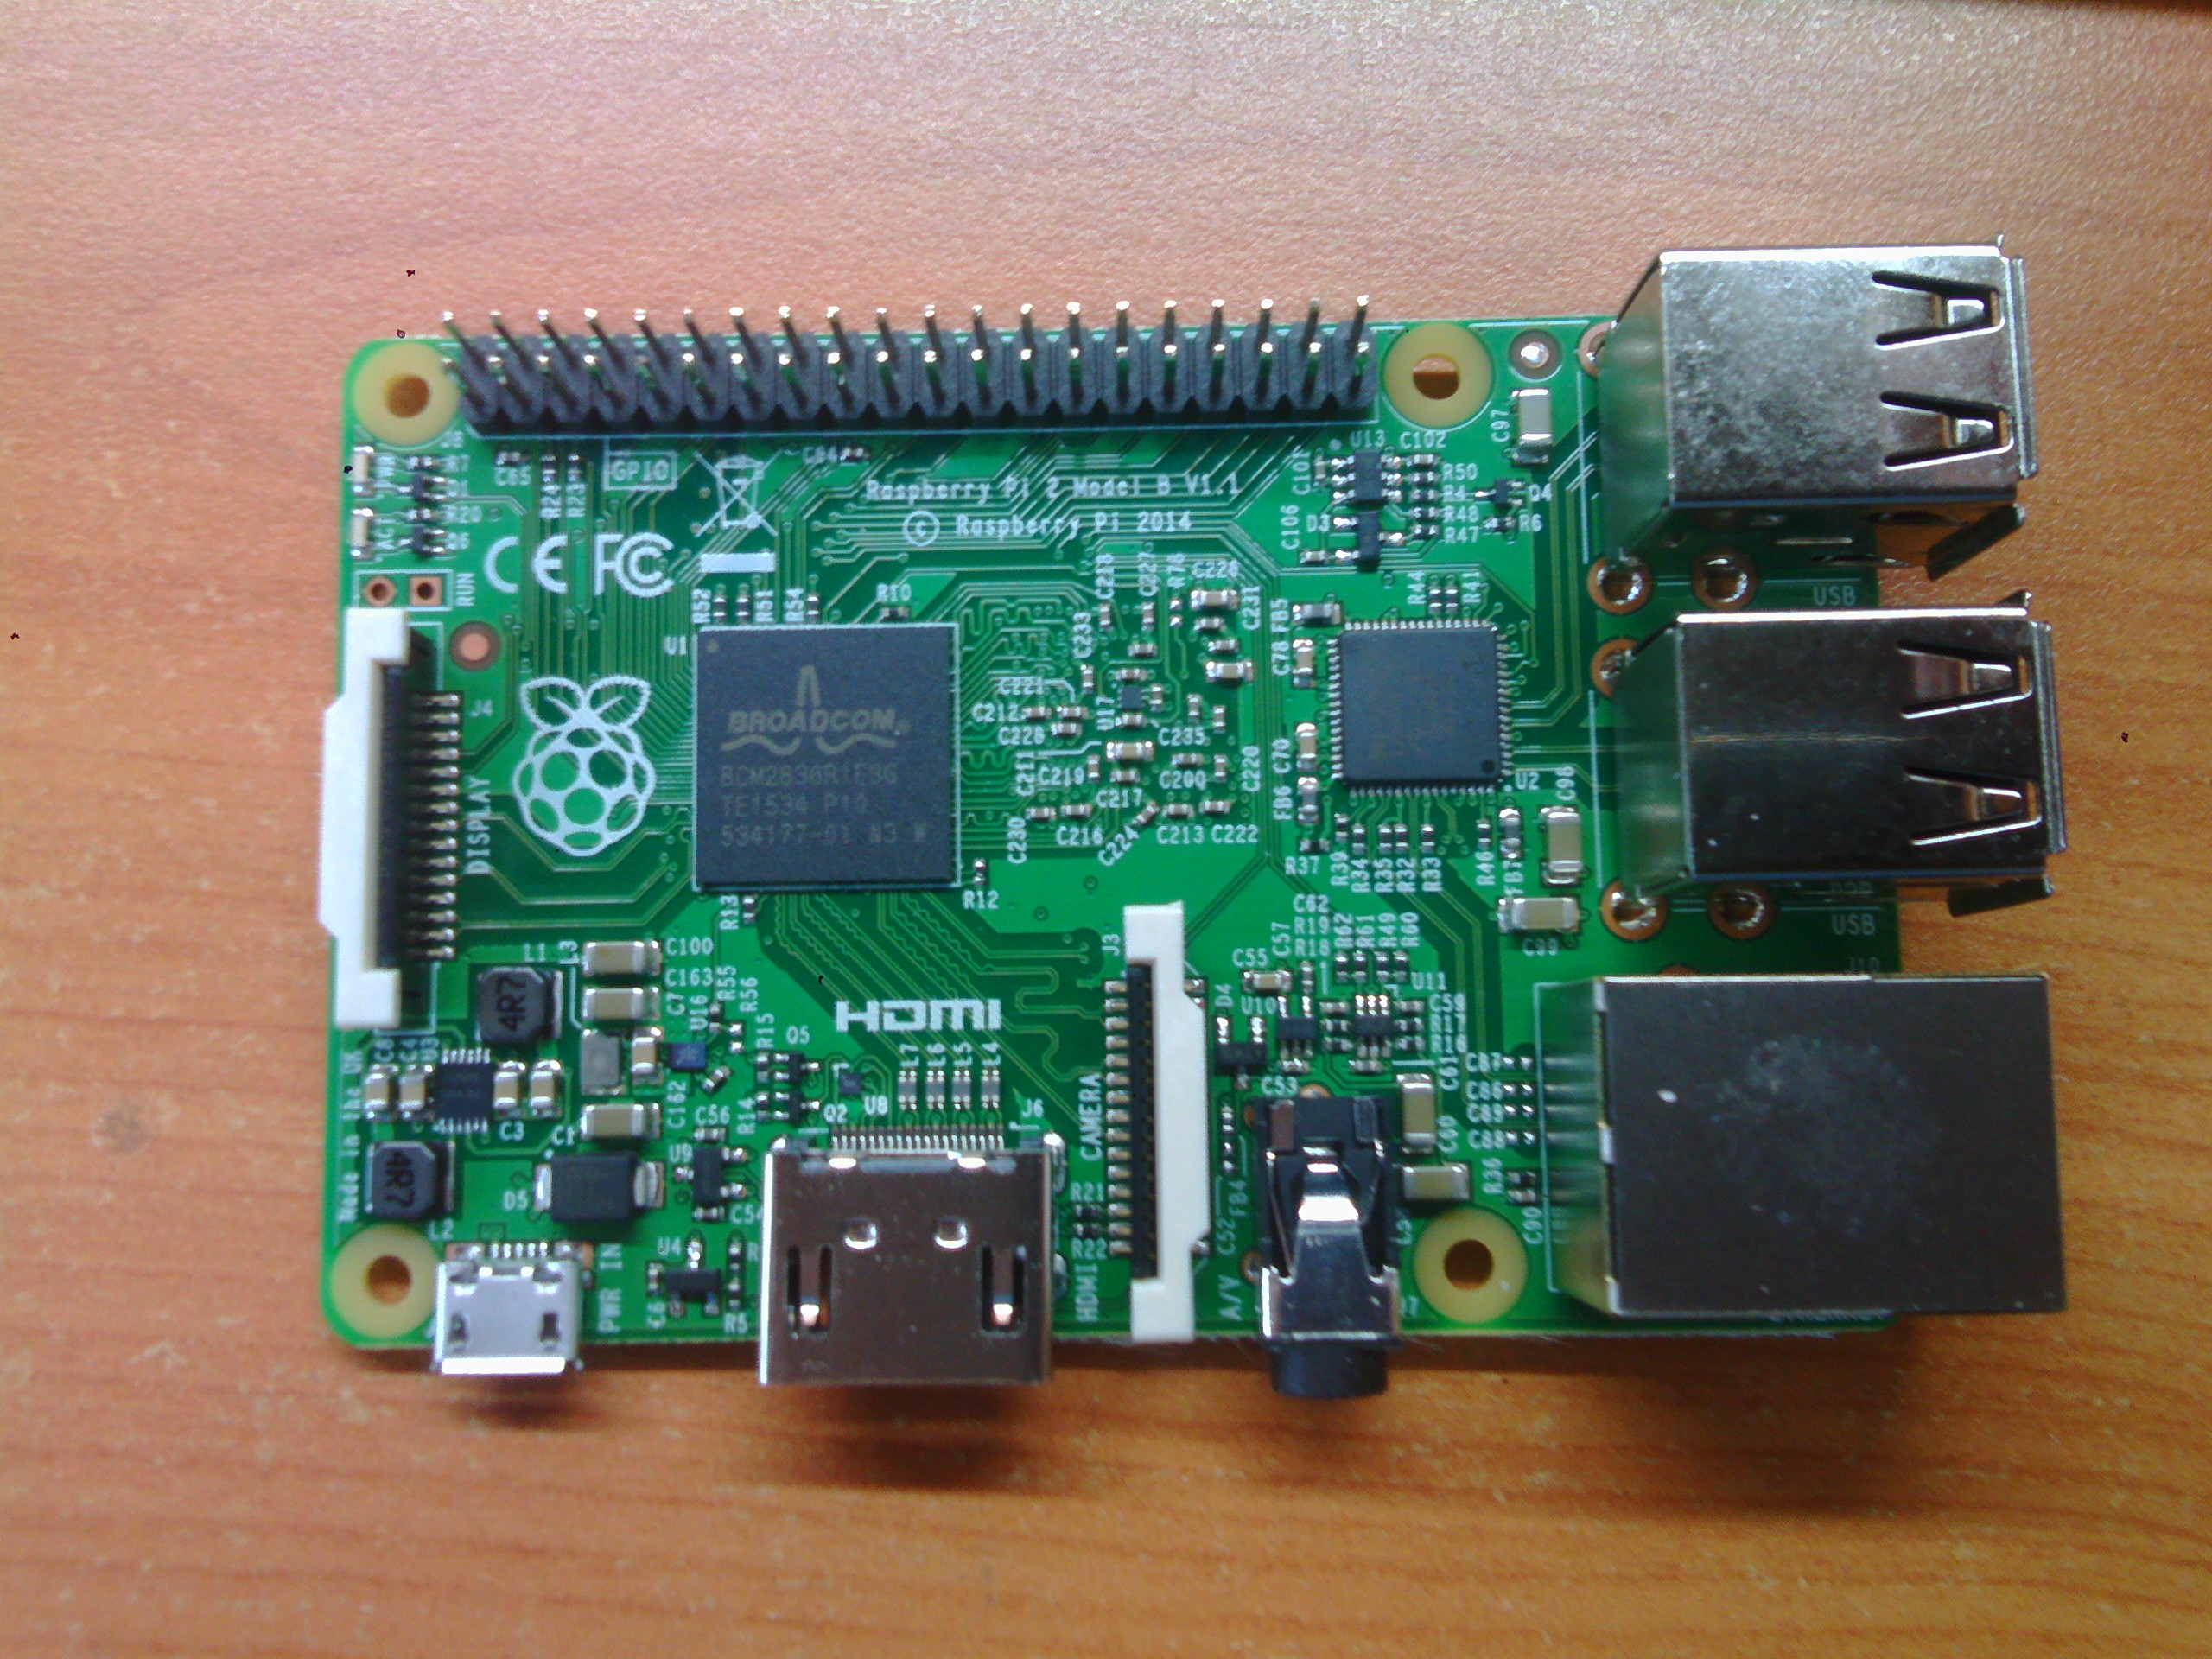 Raspberry Pi board